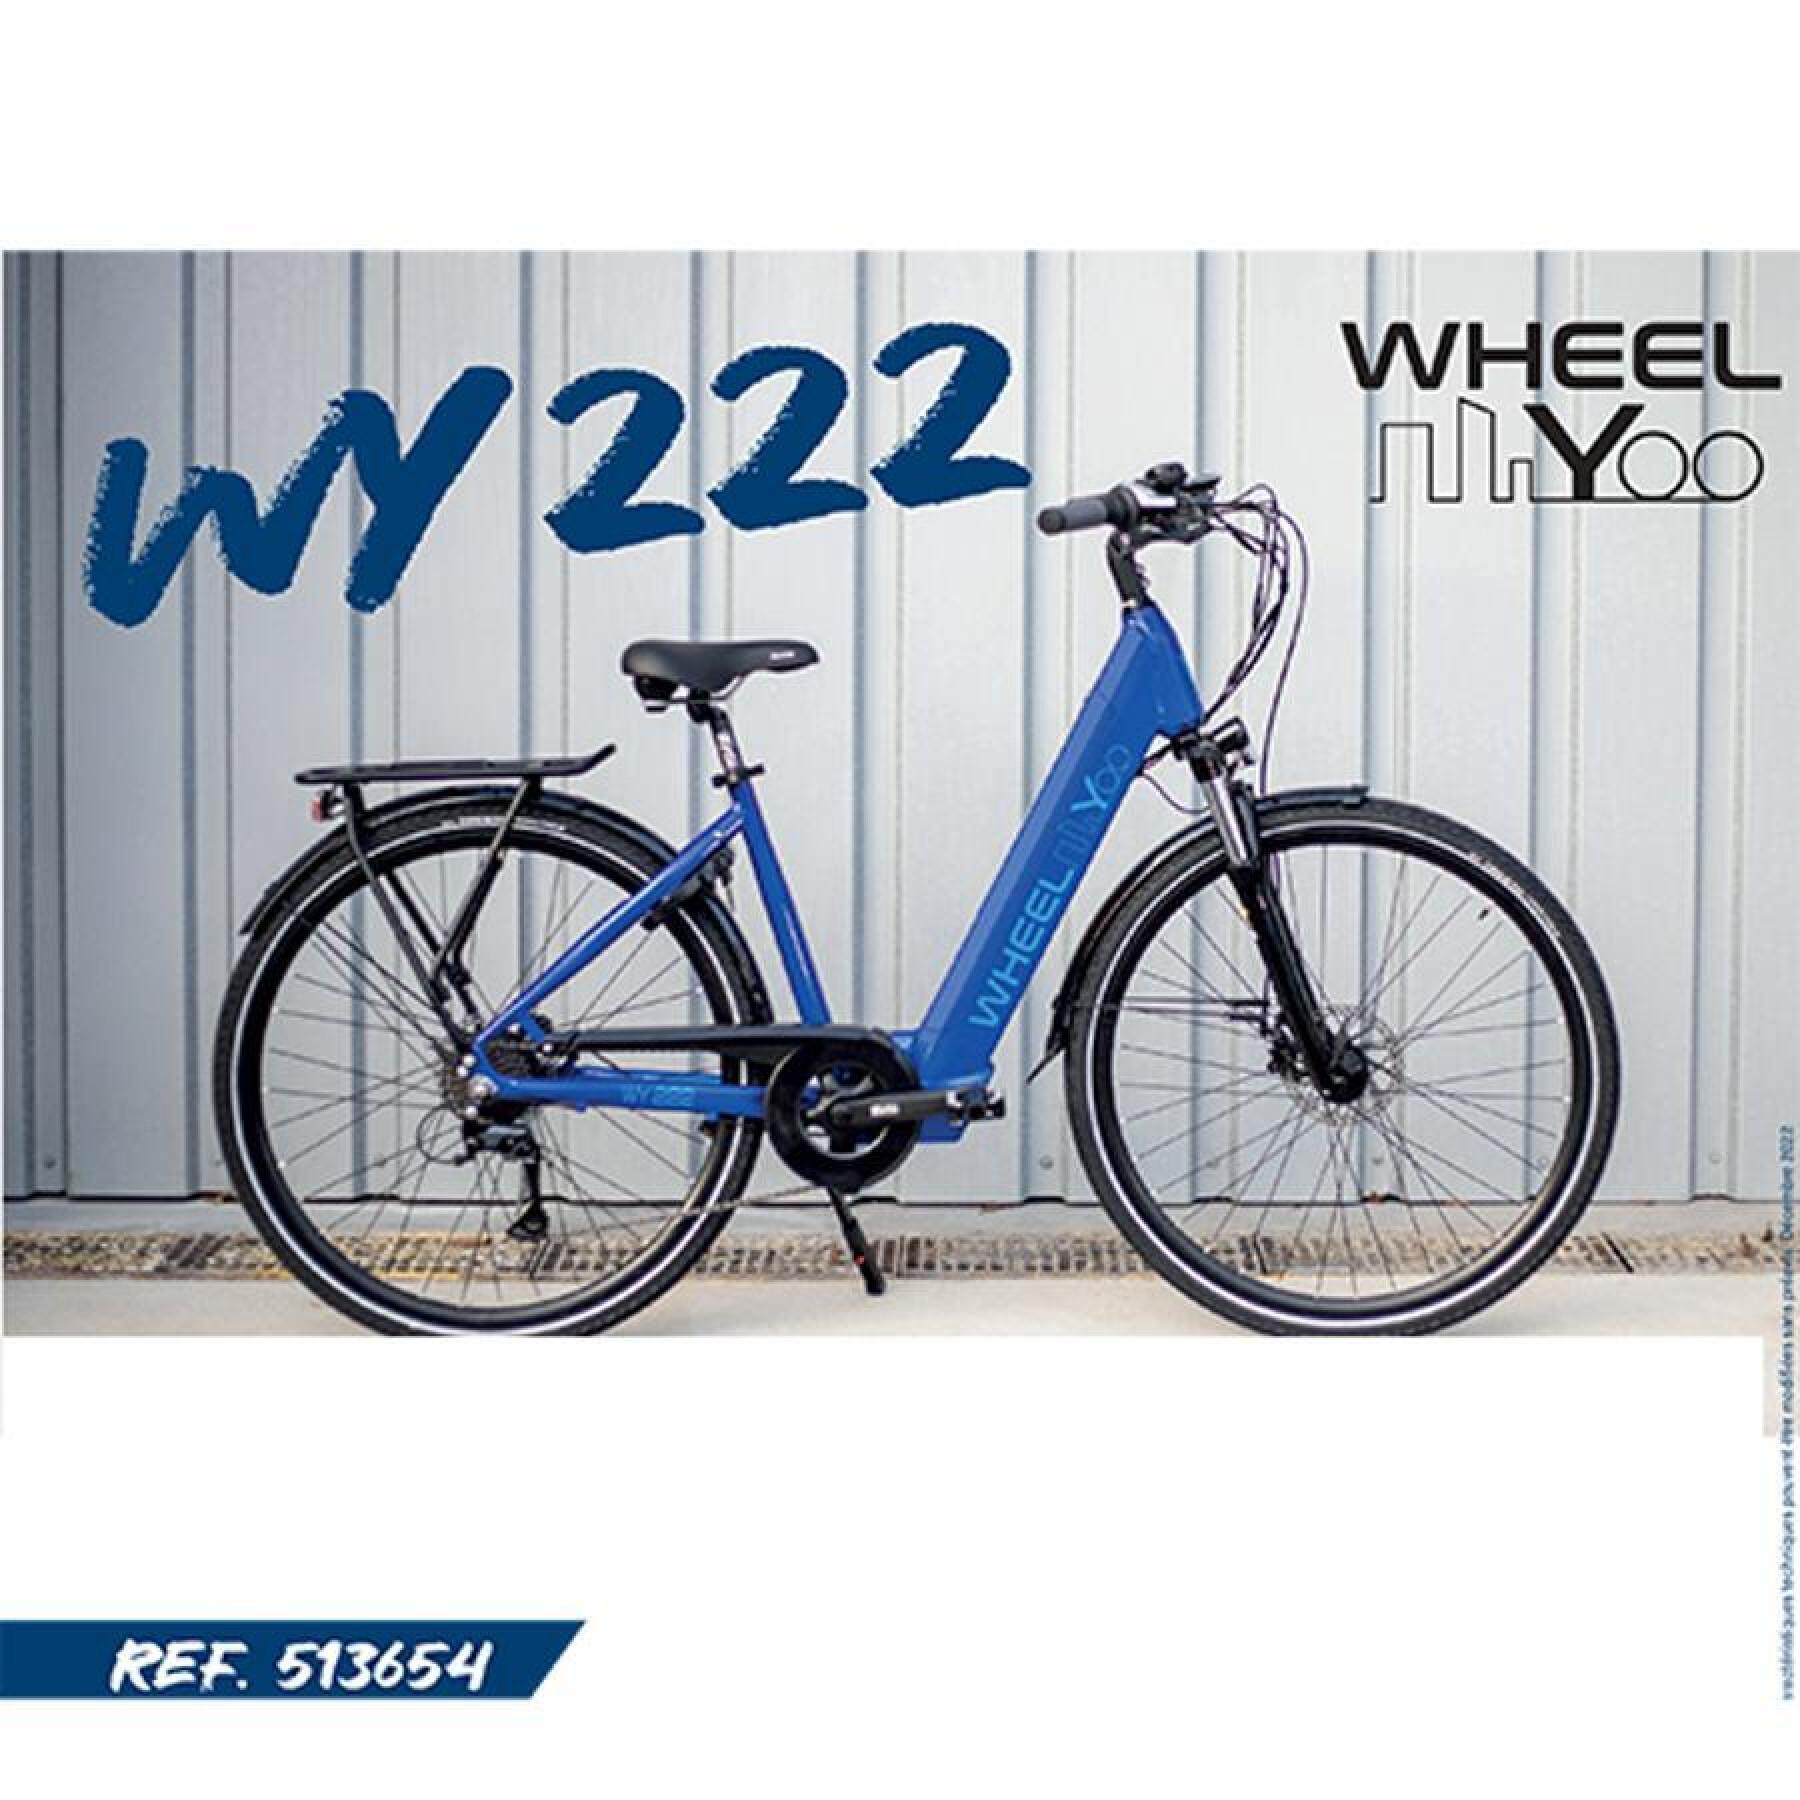 Bicicleta eléctrica com motor na roda traseira Wheelyoo WY 222